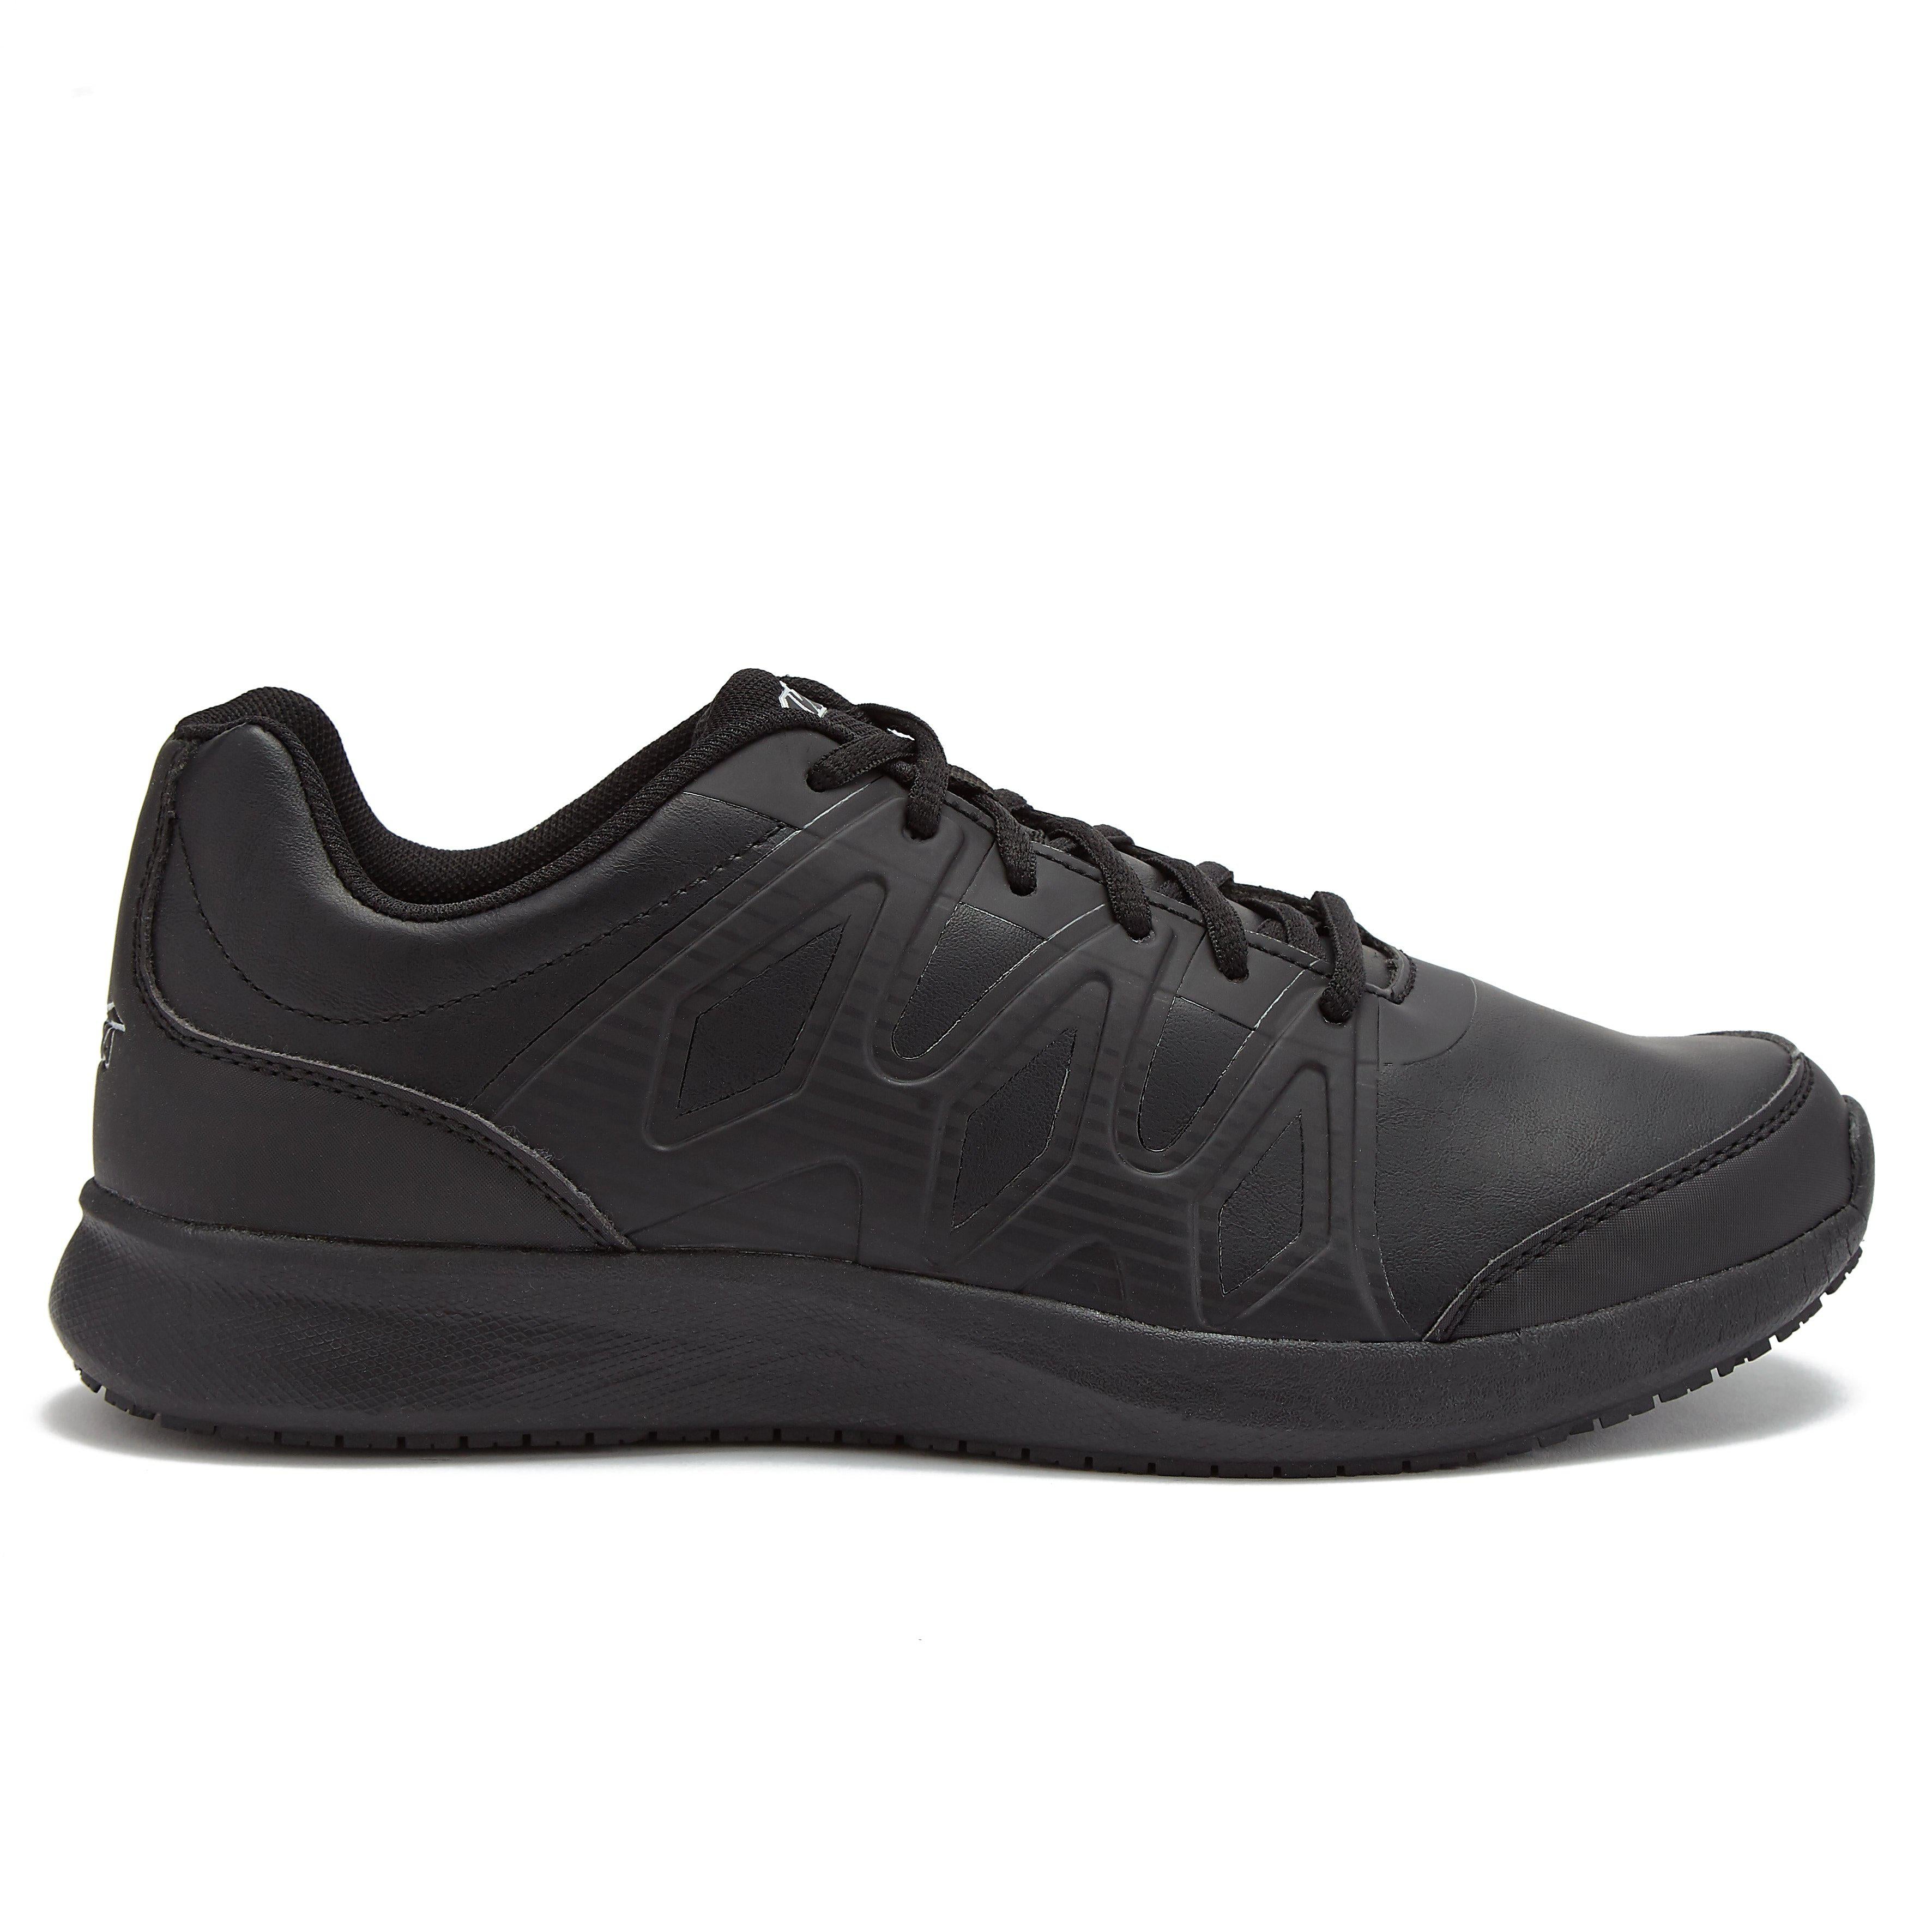 Avia Black Endurapro Active Wear Sneakers Shoes Men's Size 7.5